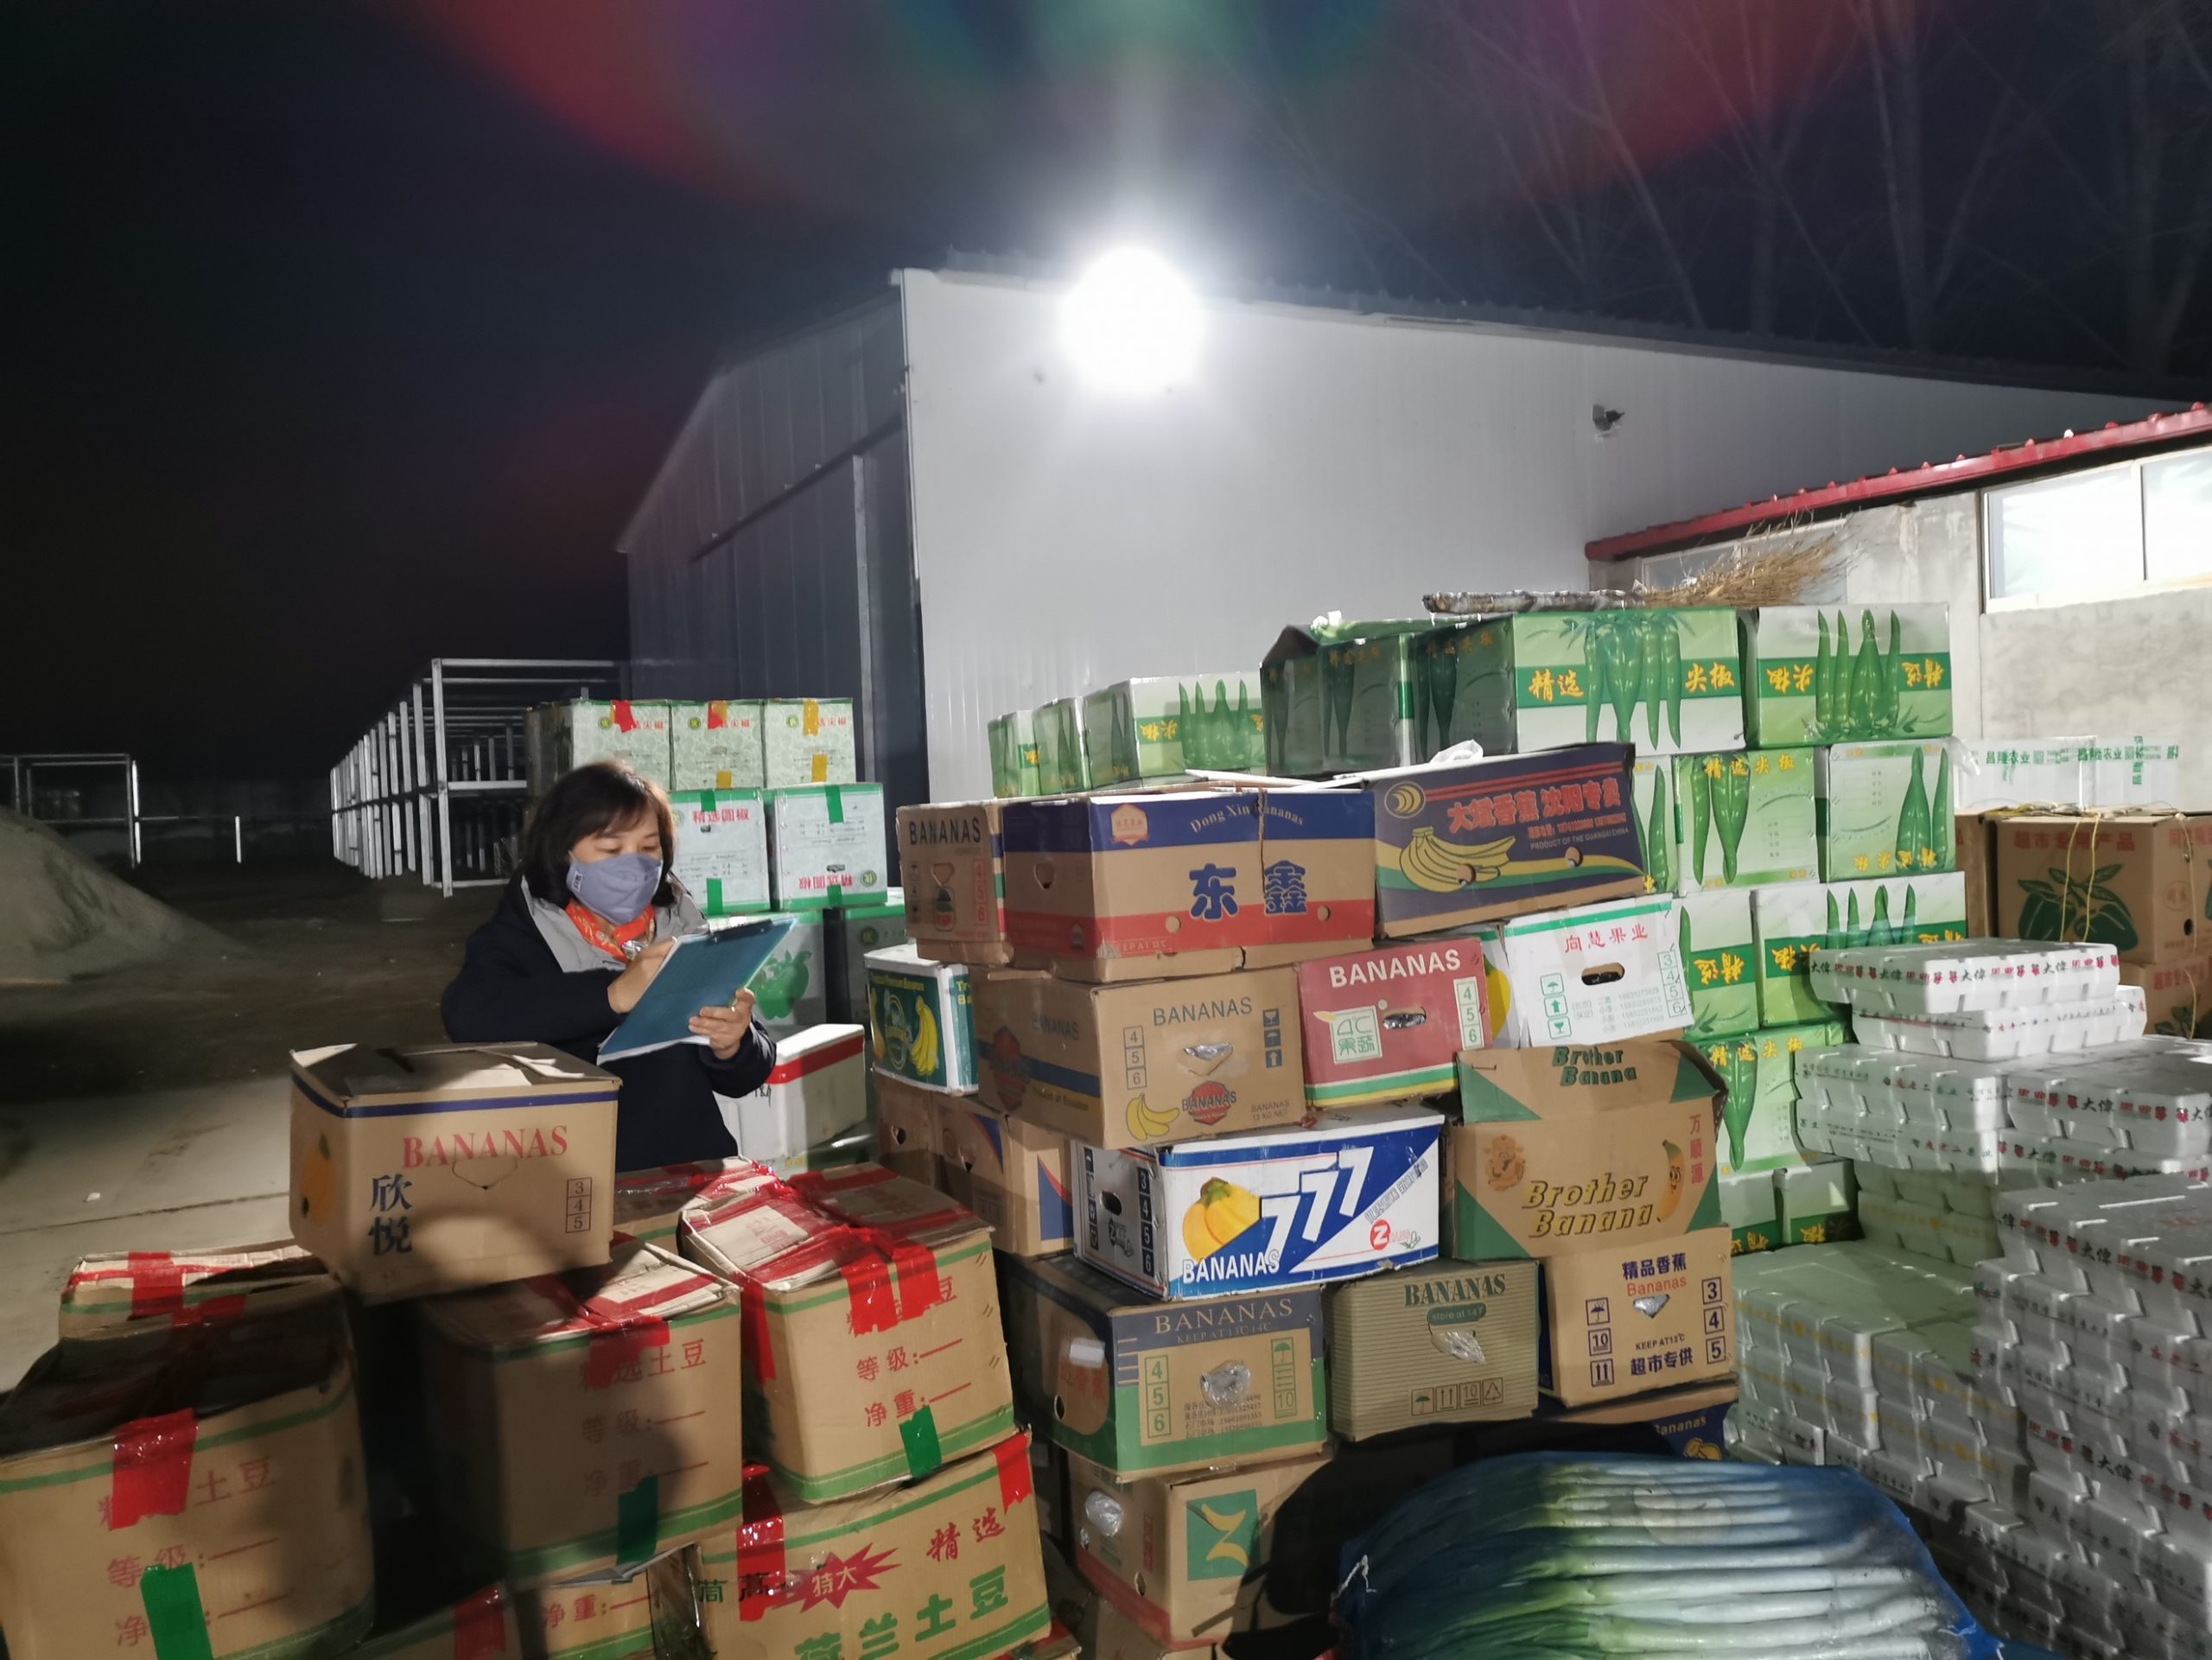 日供28家门店百余吨蔬菜 北京家乐福采购不眠不休的72小时